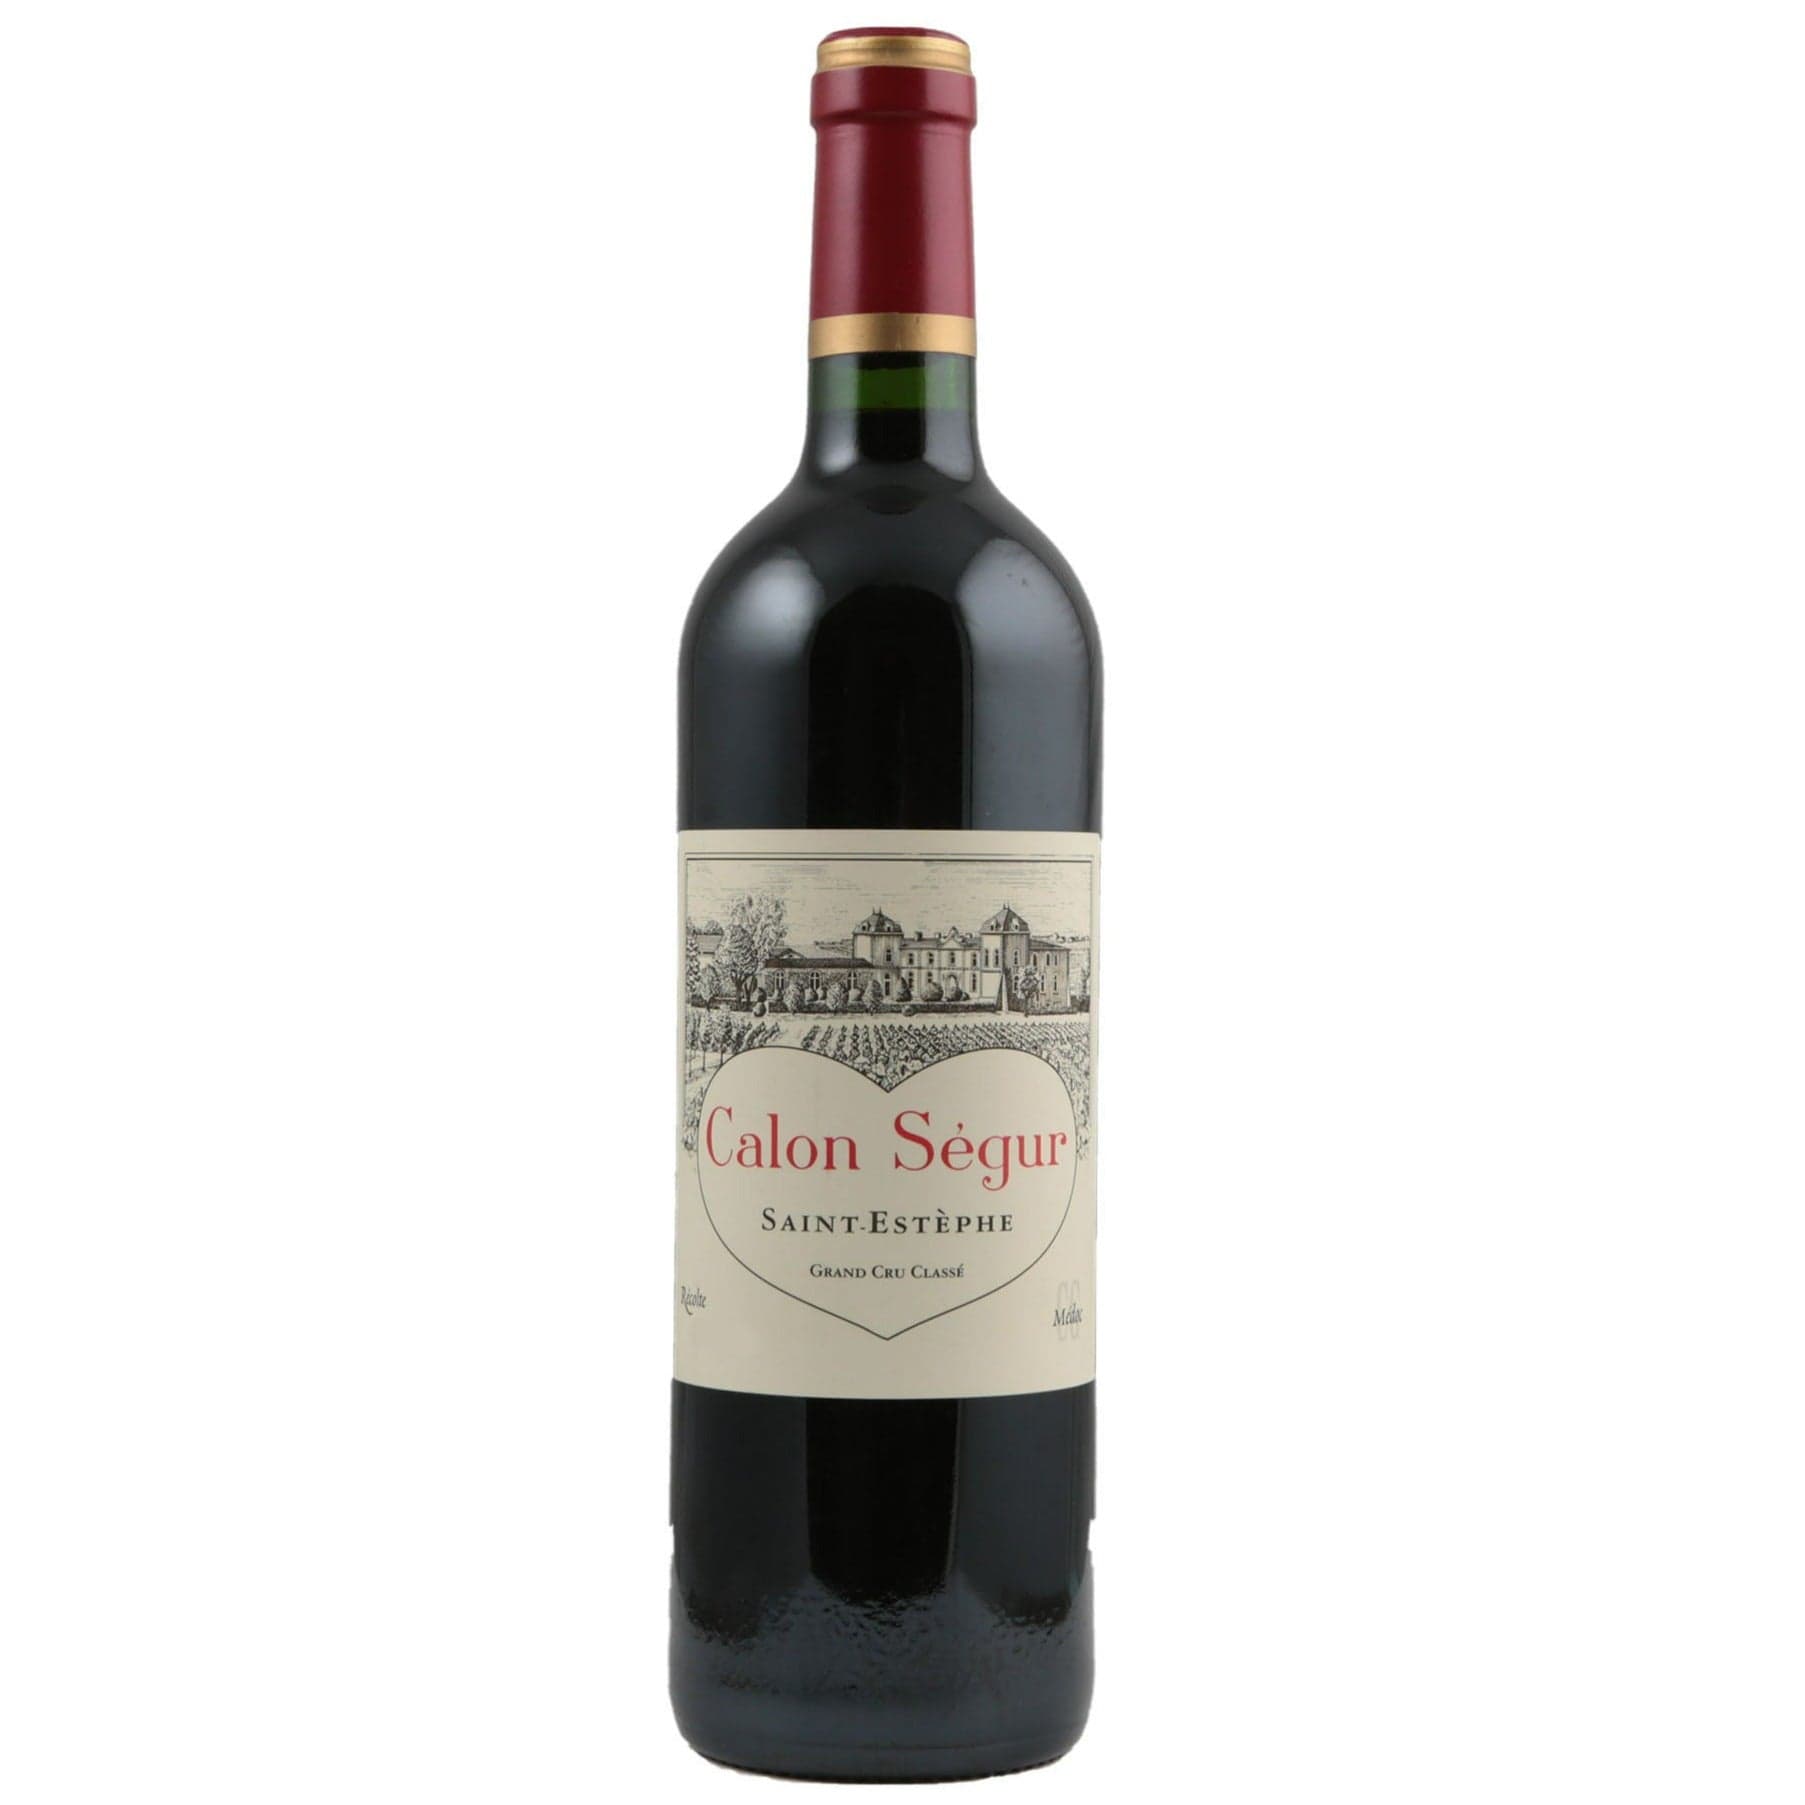 Single bottle of Red wine Ch. Calon-Segur, 3rd Growth Grand Cru Classe, Saint-Estephe, 2009 57% Cabernet Sauvignon, 34% Merlot, 7% Cabernet Franc & 2% Petit Verdot